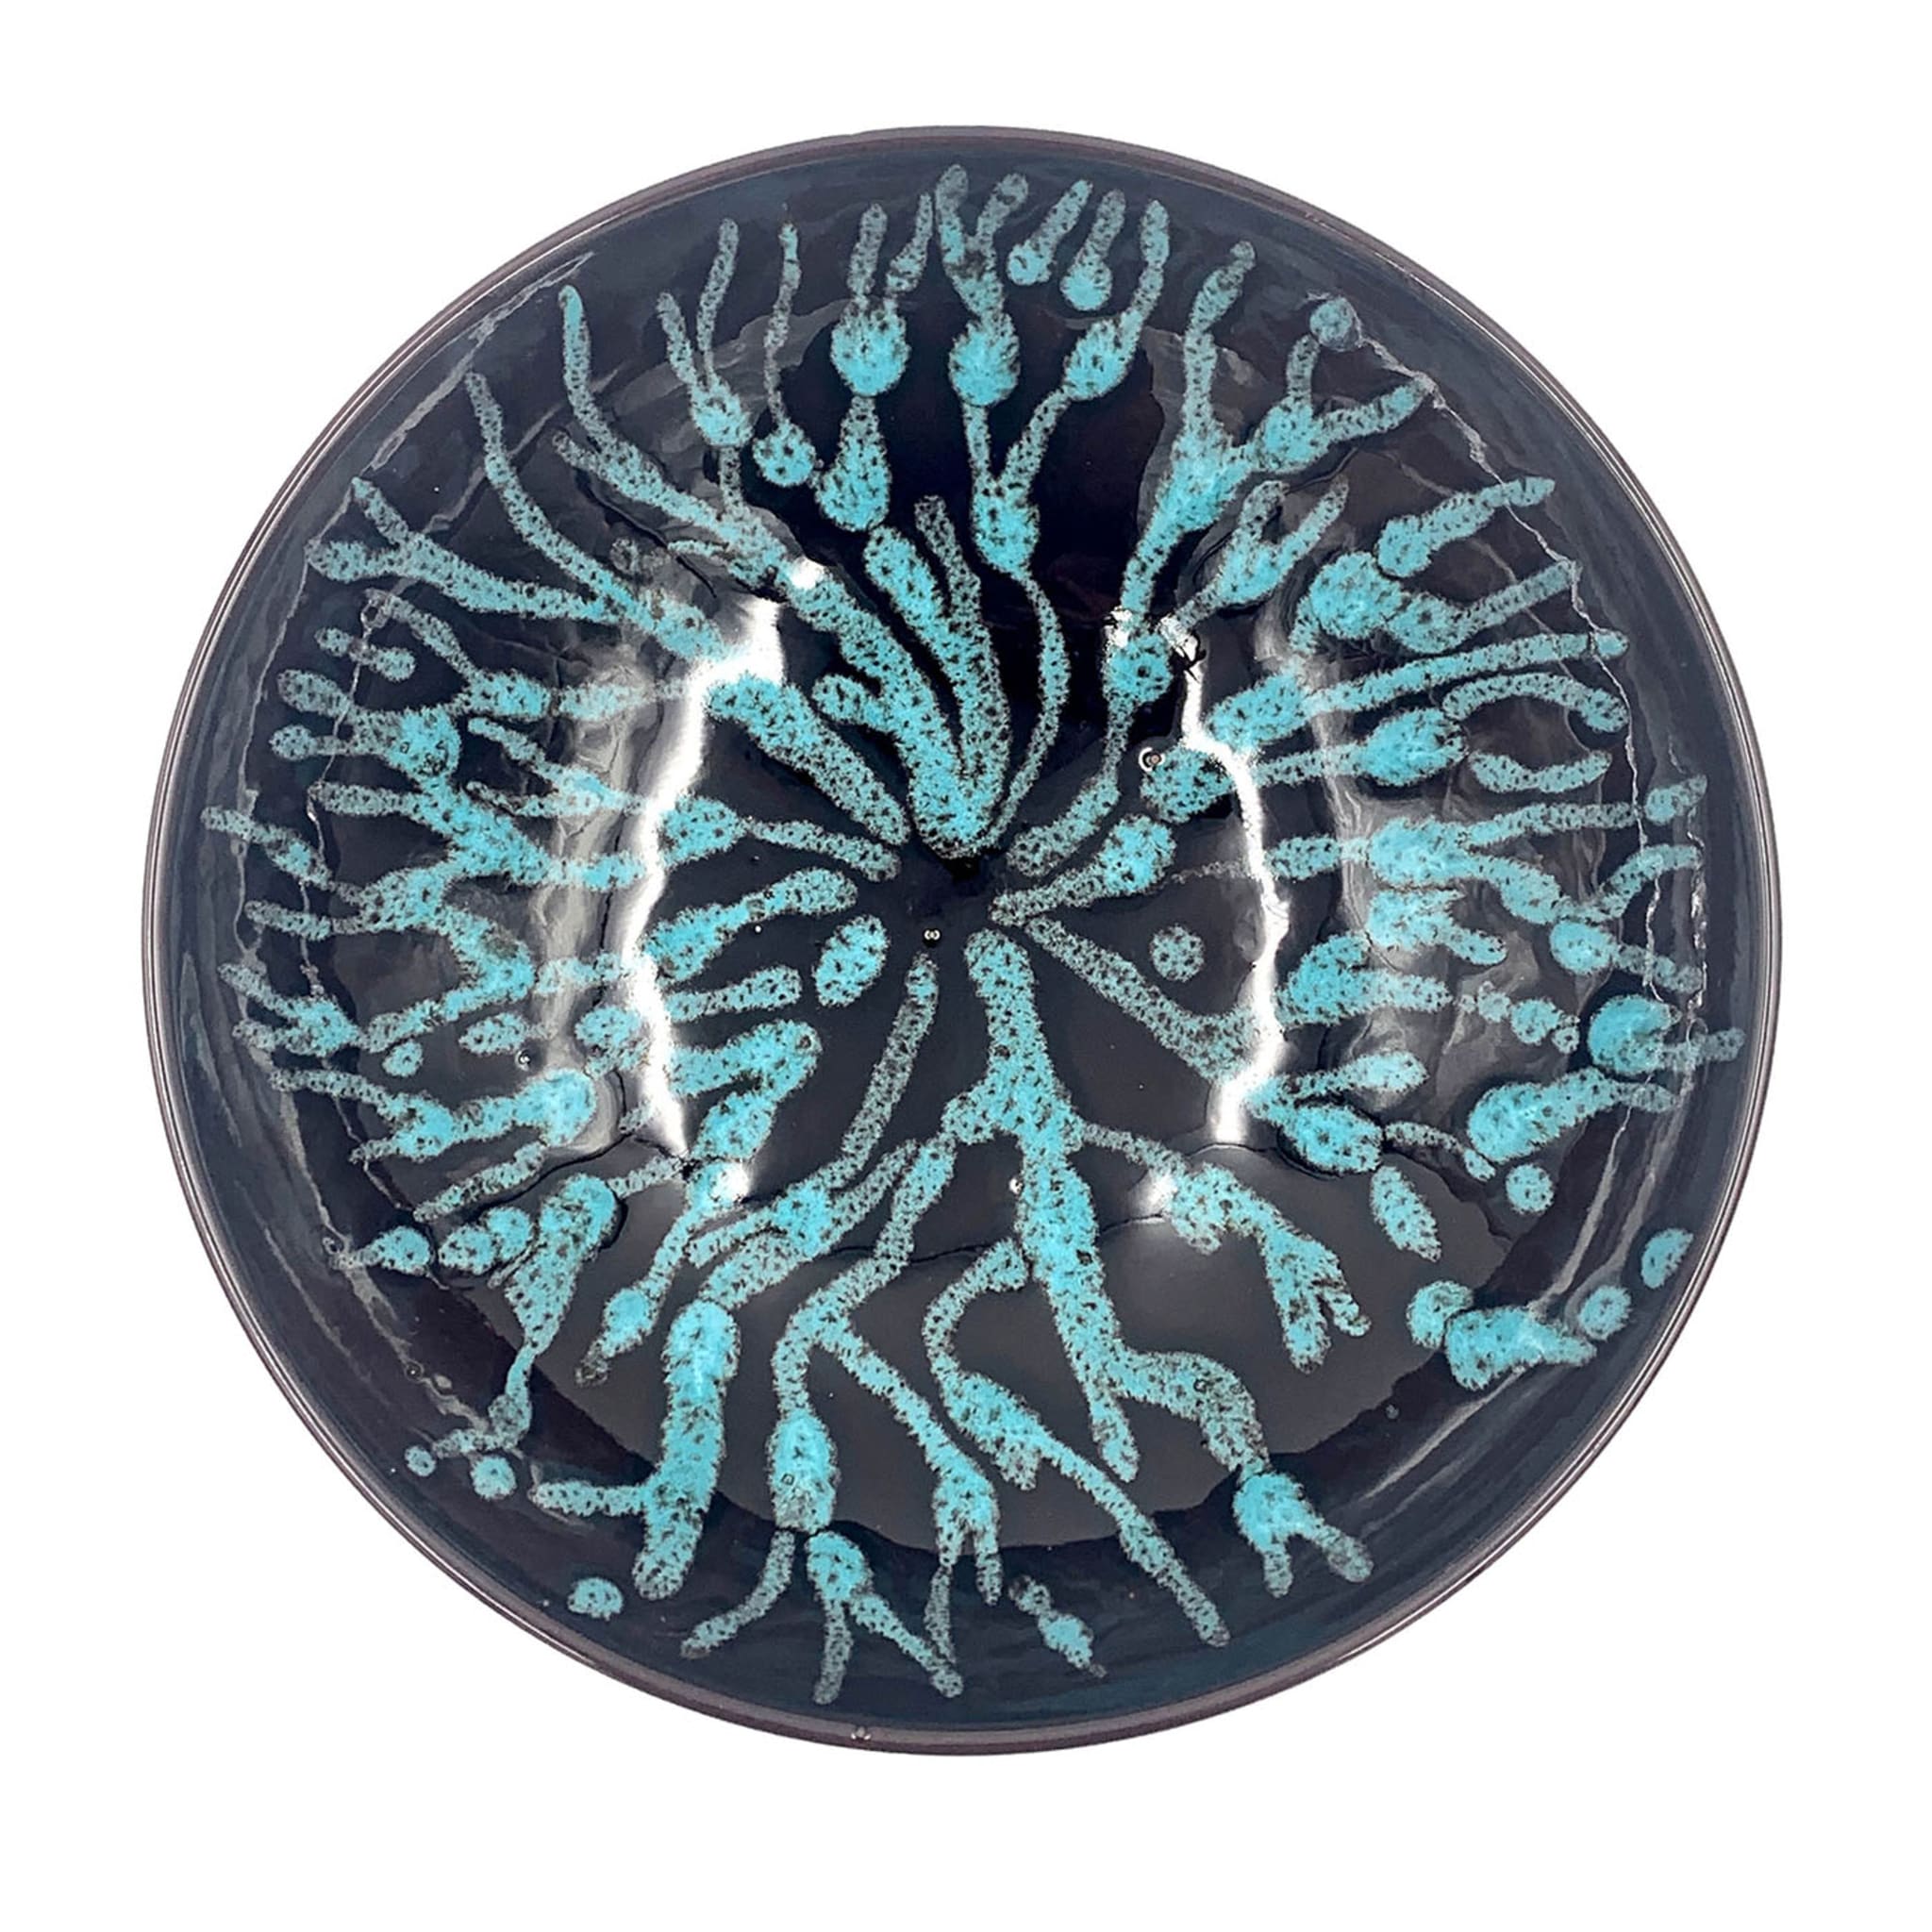 Corallo Blu Ceramic Centerpiece - Main view